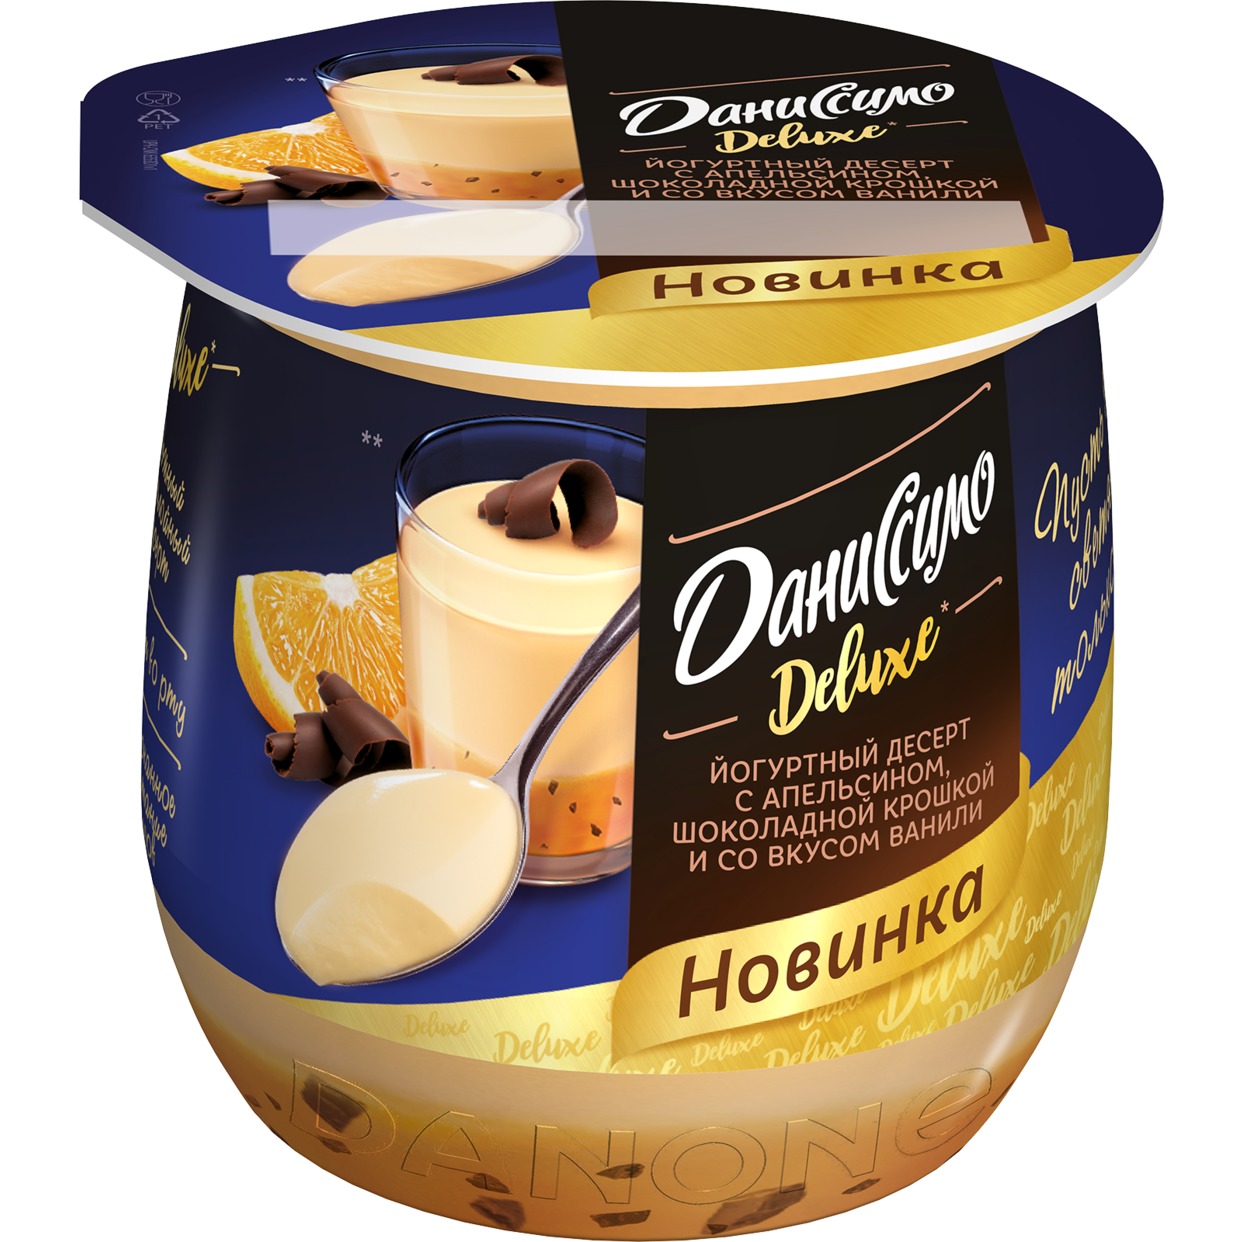 Даниссимо десерт кисломолоч йогуртн термостат со вкусом ванили и с апельсином и шоколадной крошкой «Deluxe Пудинг» 4,6% 160г по акции в Пятерочке